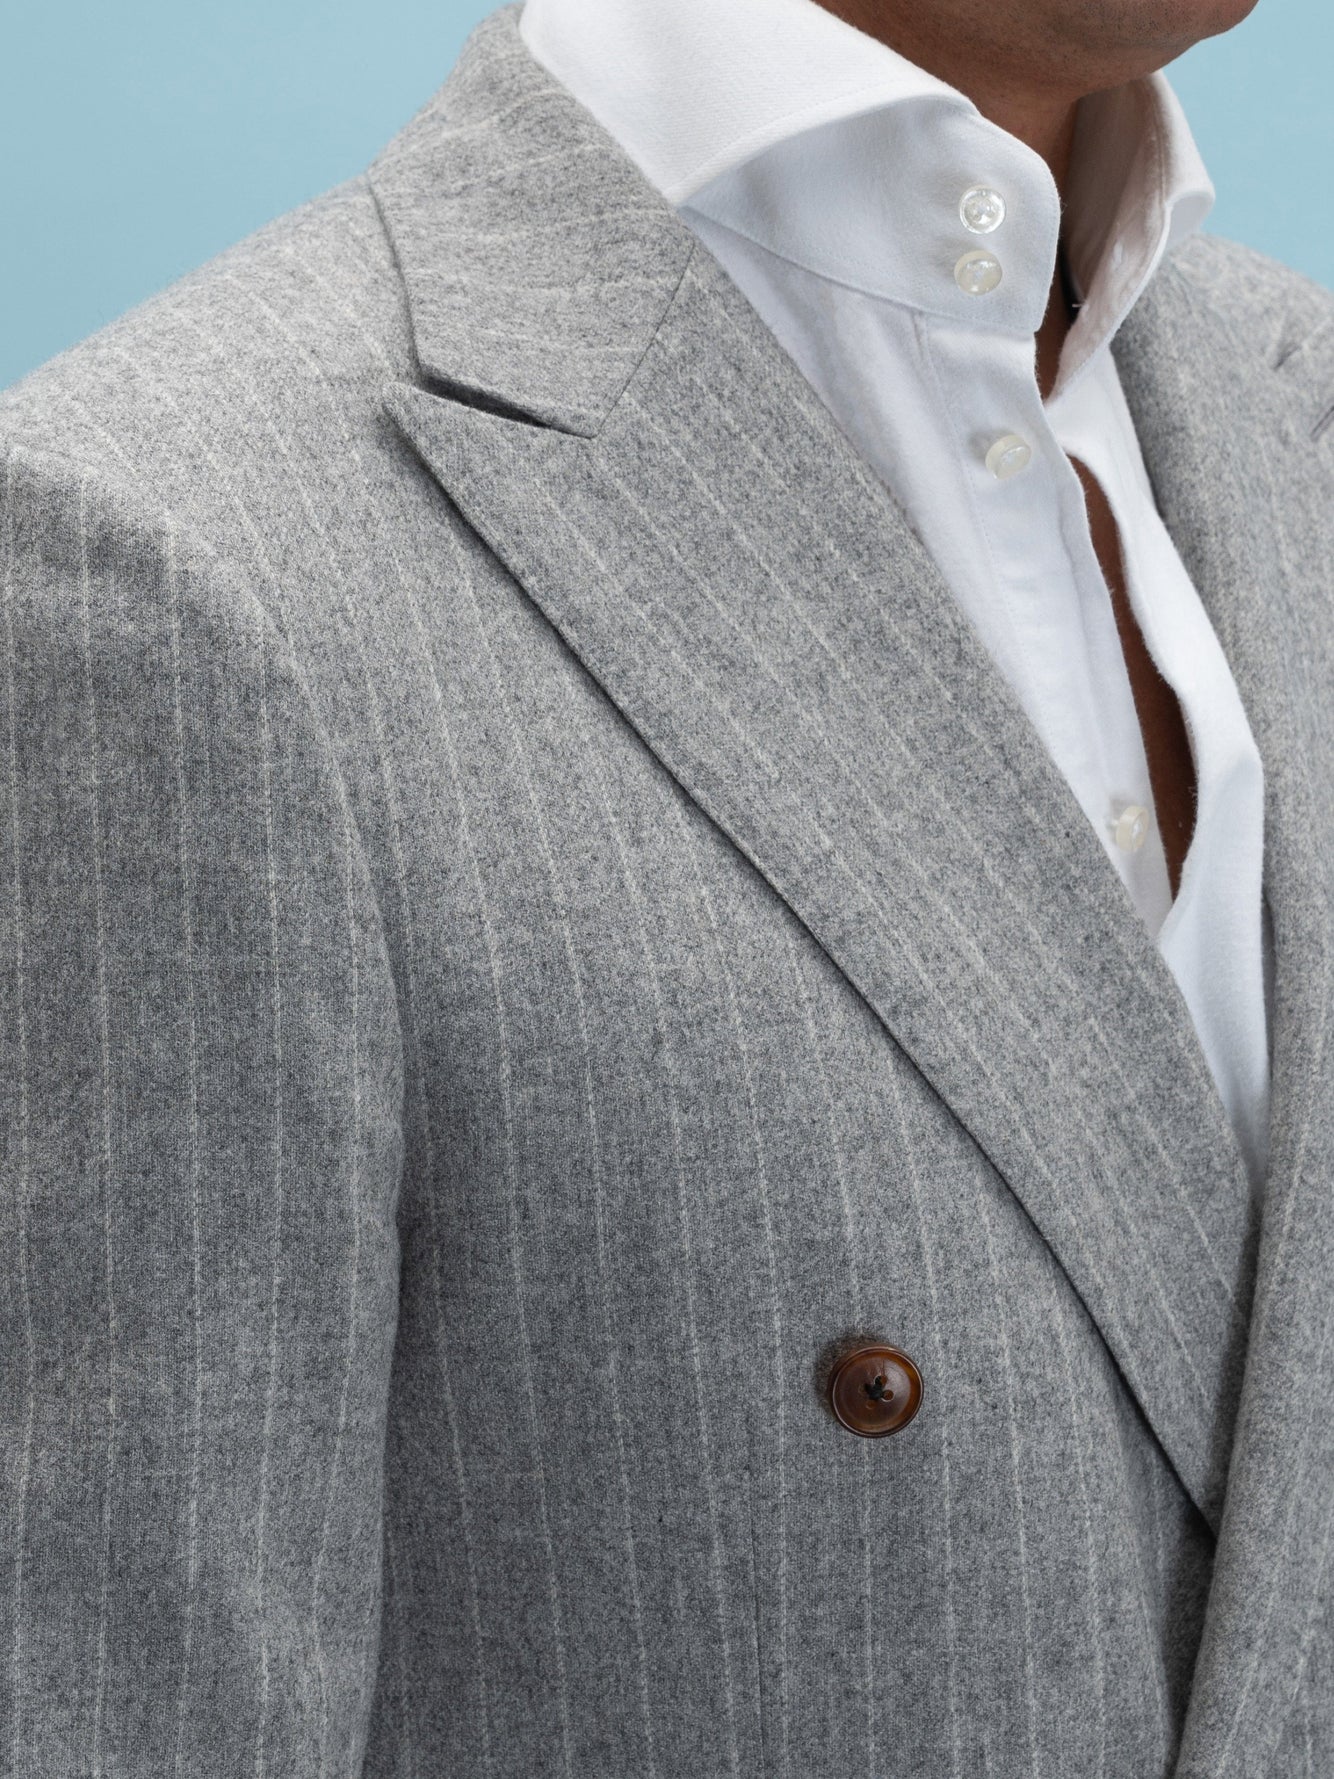 Biella Grey Flannel Striped Suit - Grand Le Mar